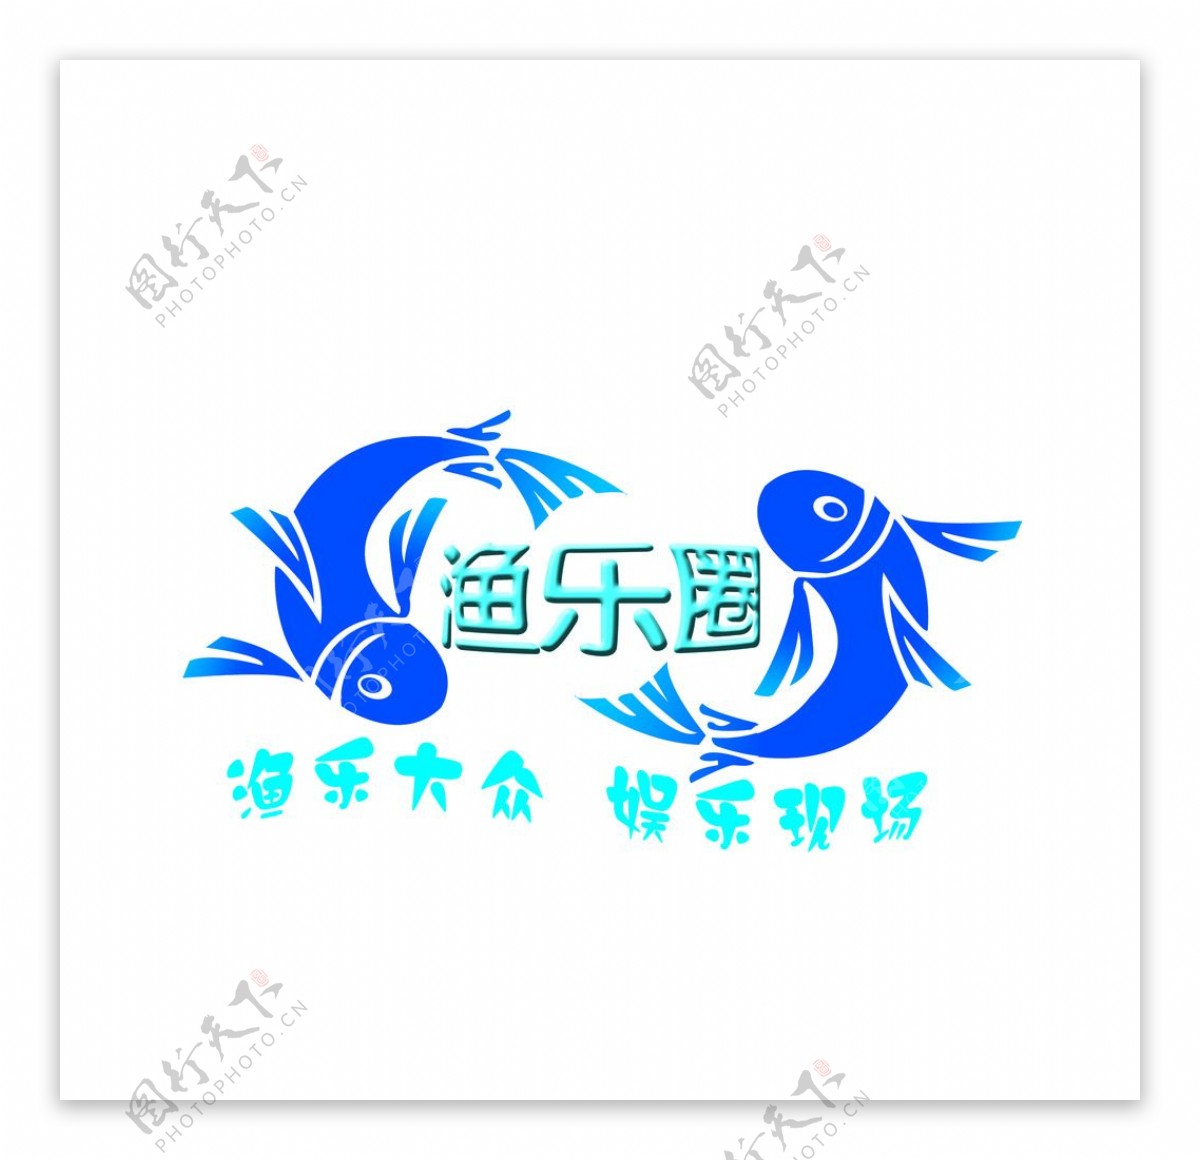 鱼乐圈logo